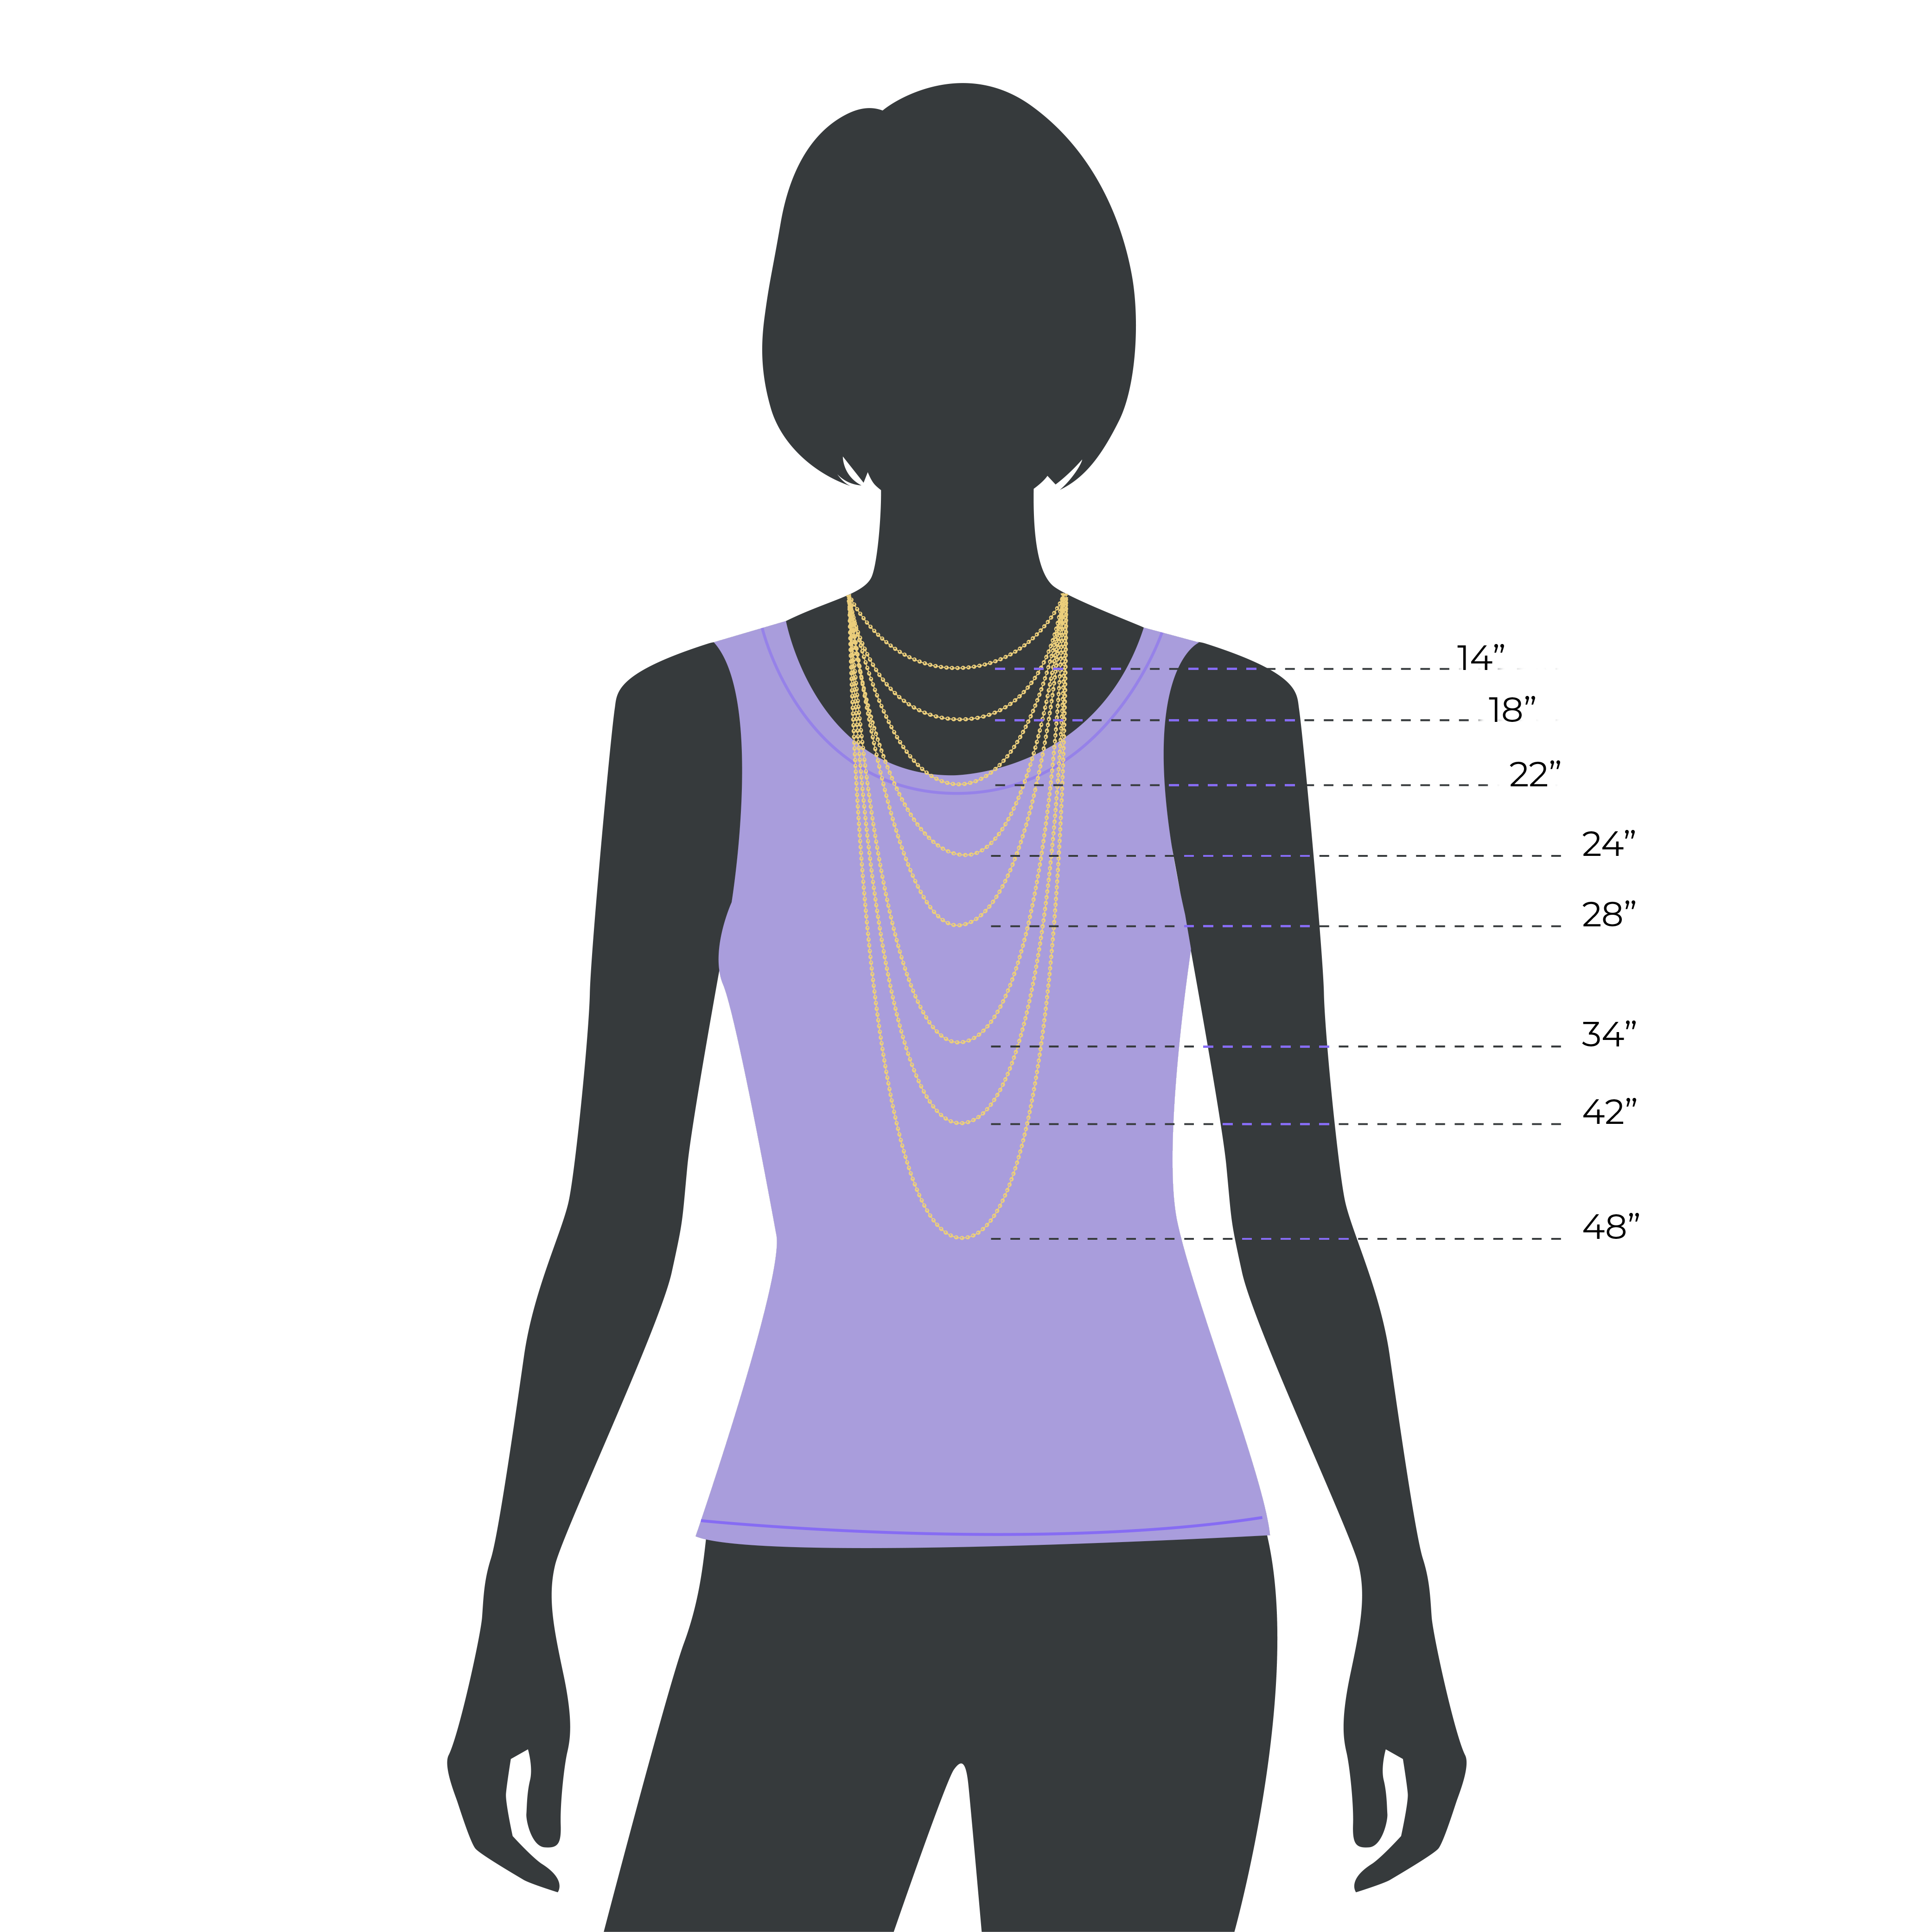 Female Silhouette Chain Size Guide